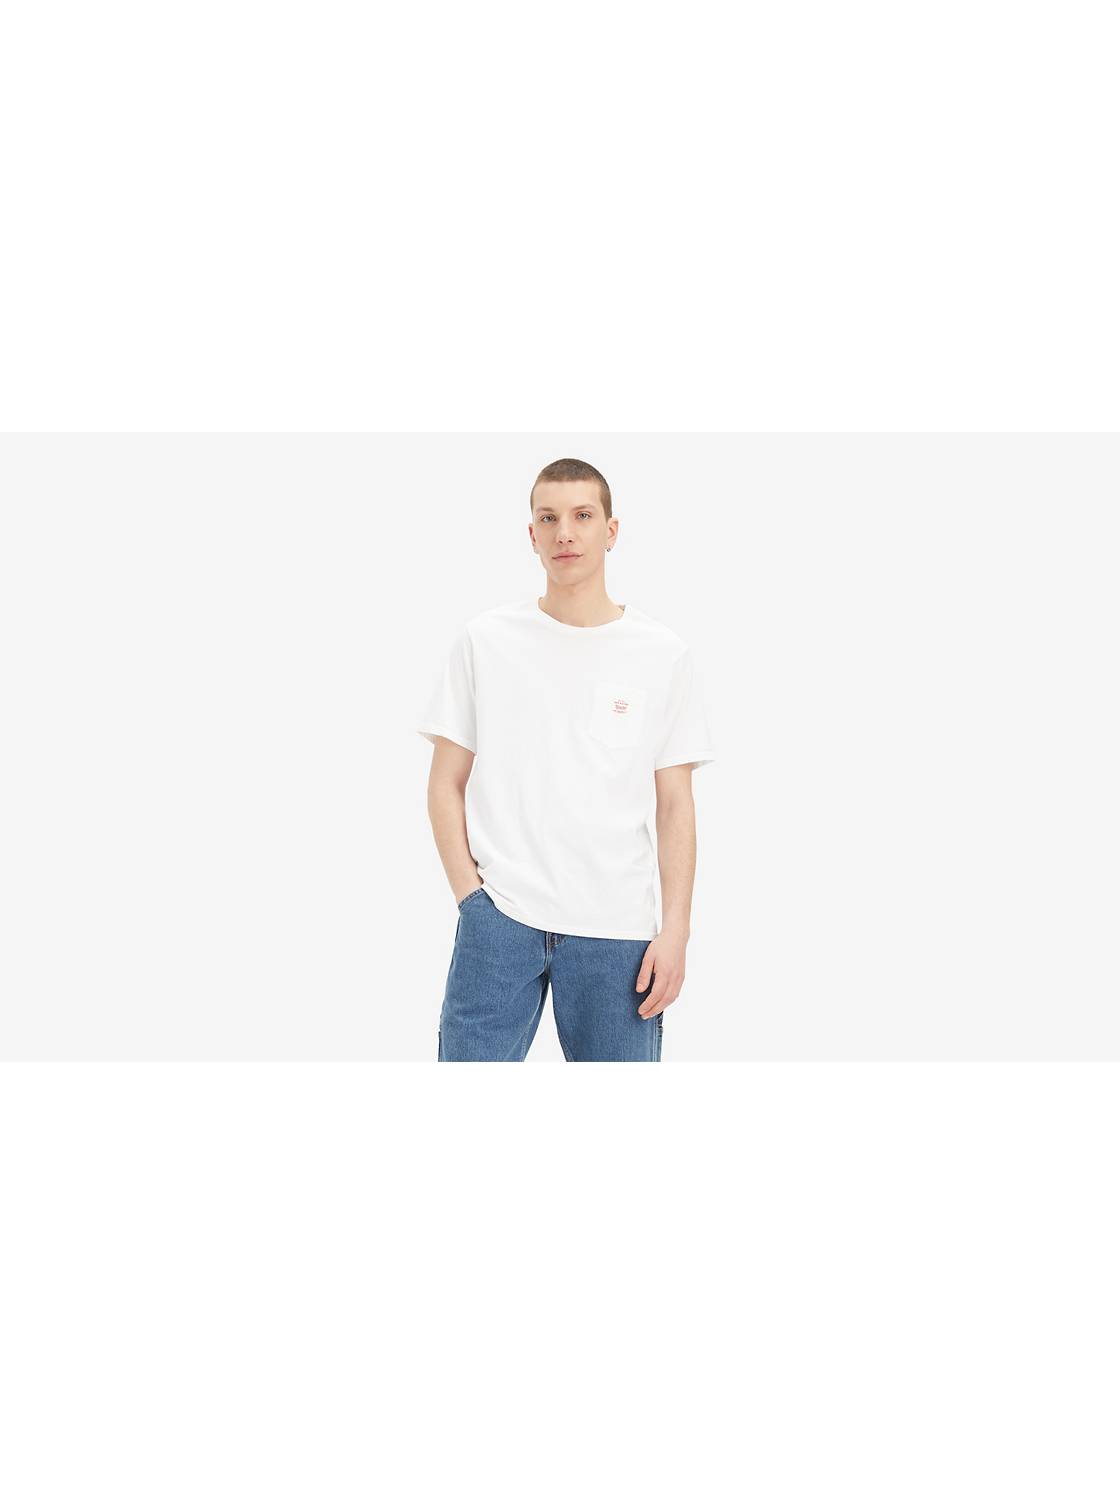 Le célèbre t-shirt Levis blanc pour homme est à moins de 24 euros en ce  moment